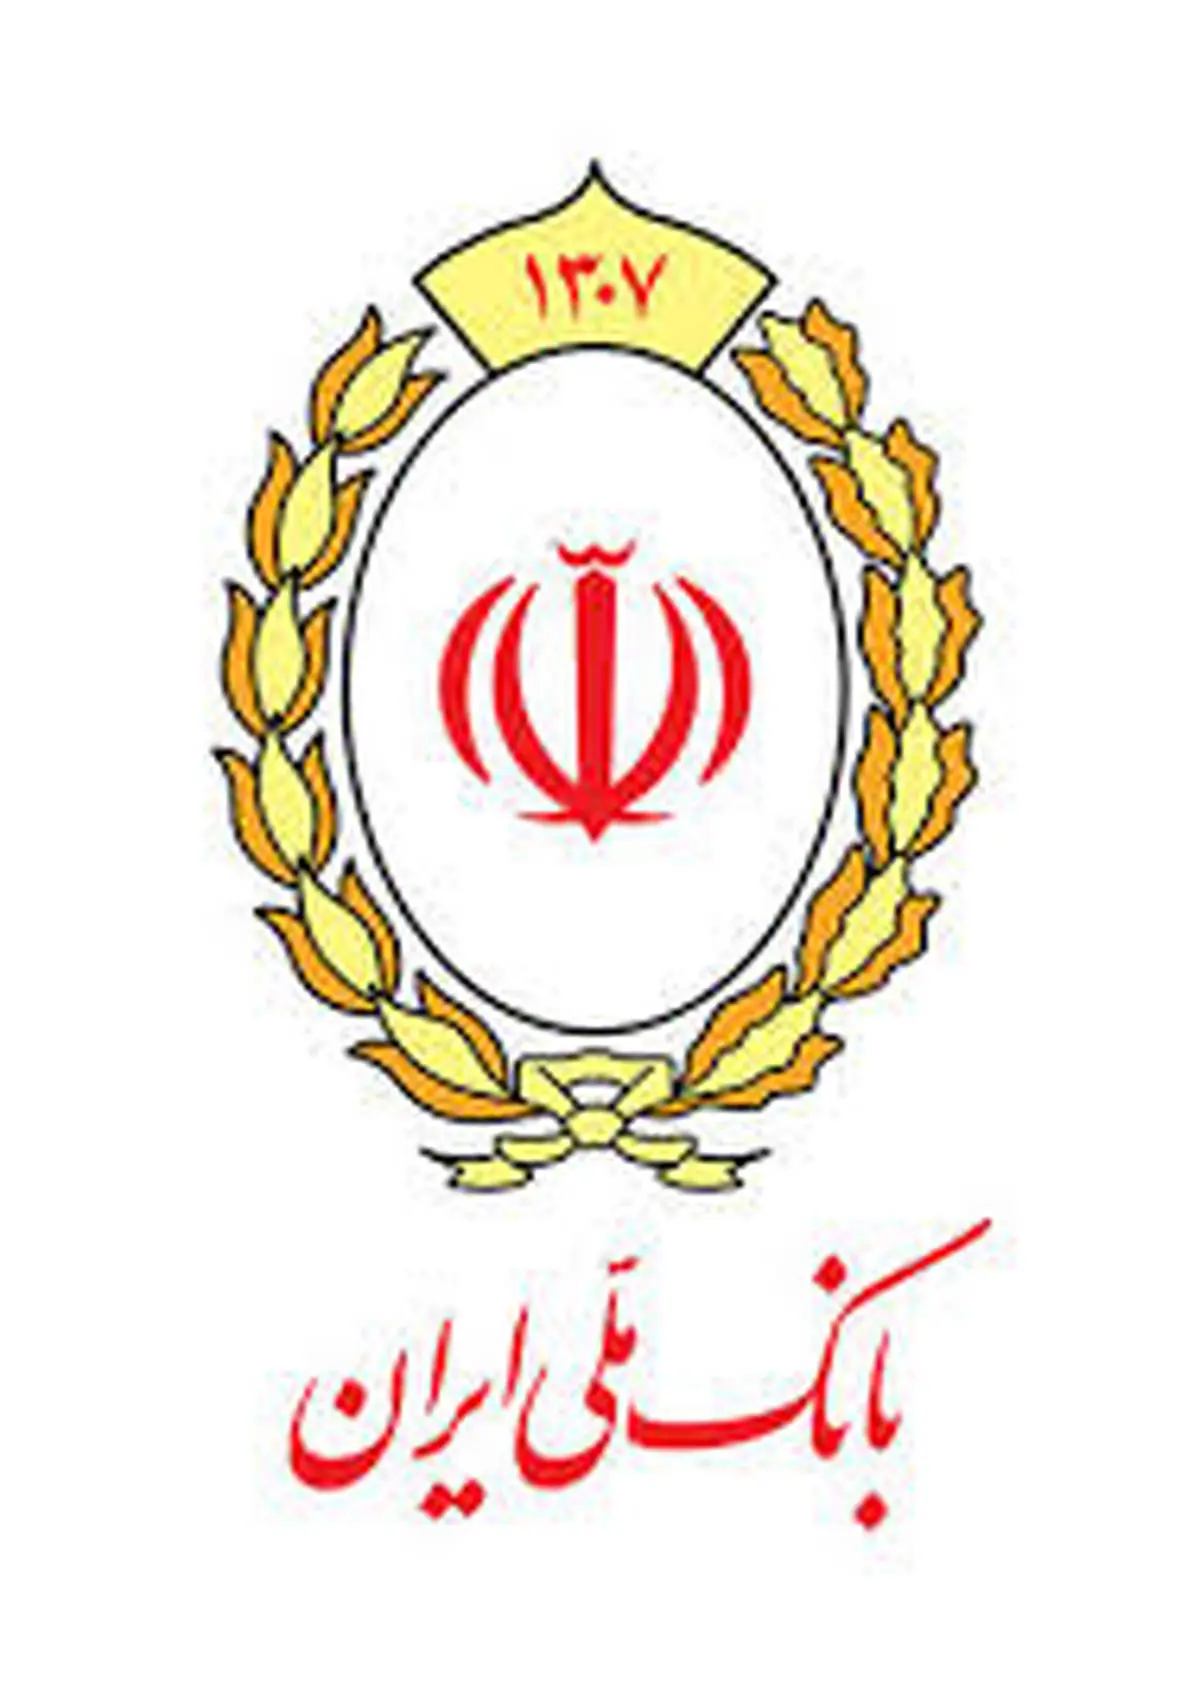 شمارش معکوس قرعه کشی مسابقه «رو به حرم» بانک ملی ایران

